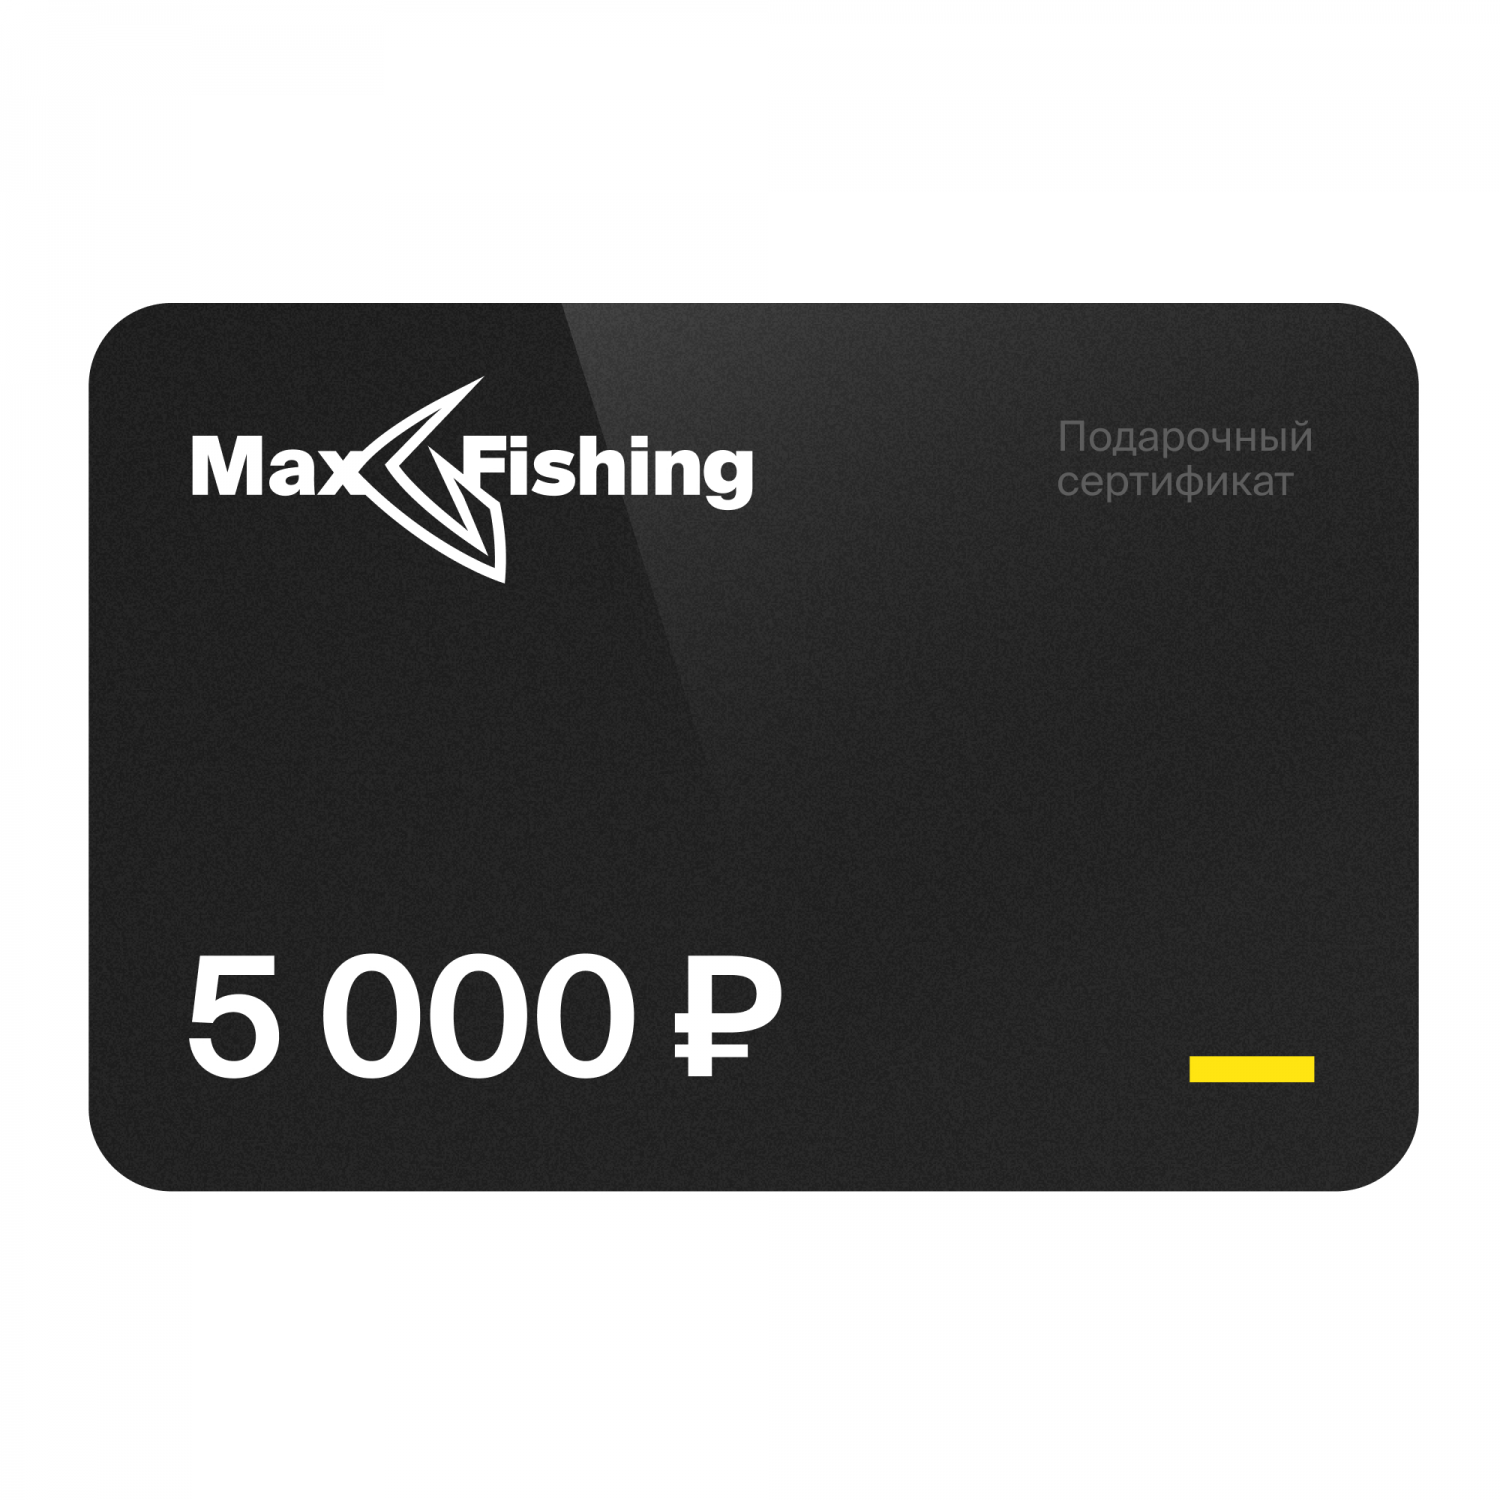 Подарочный сертификат MaxFishing 5 000 ₽ подарочный сертификат maxfishing 25